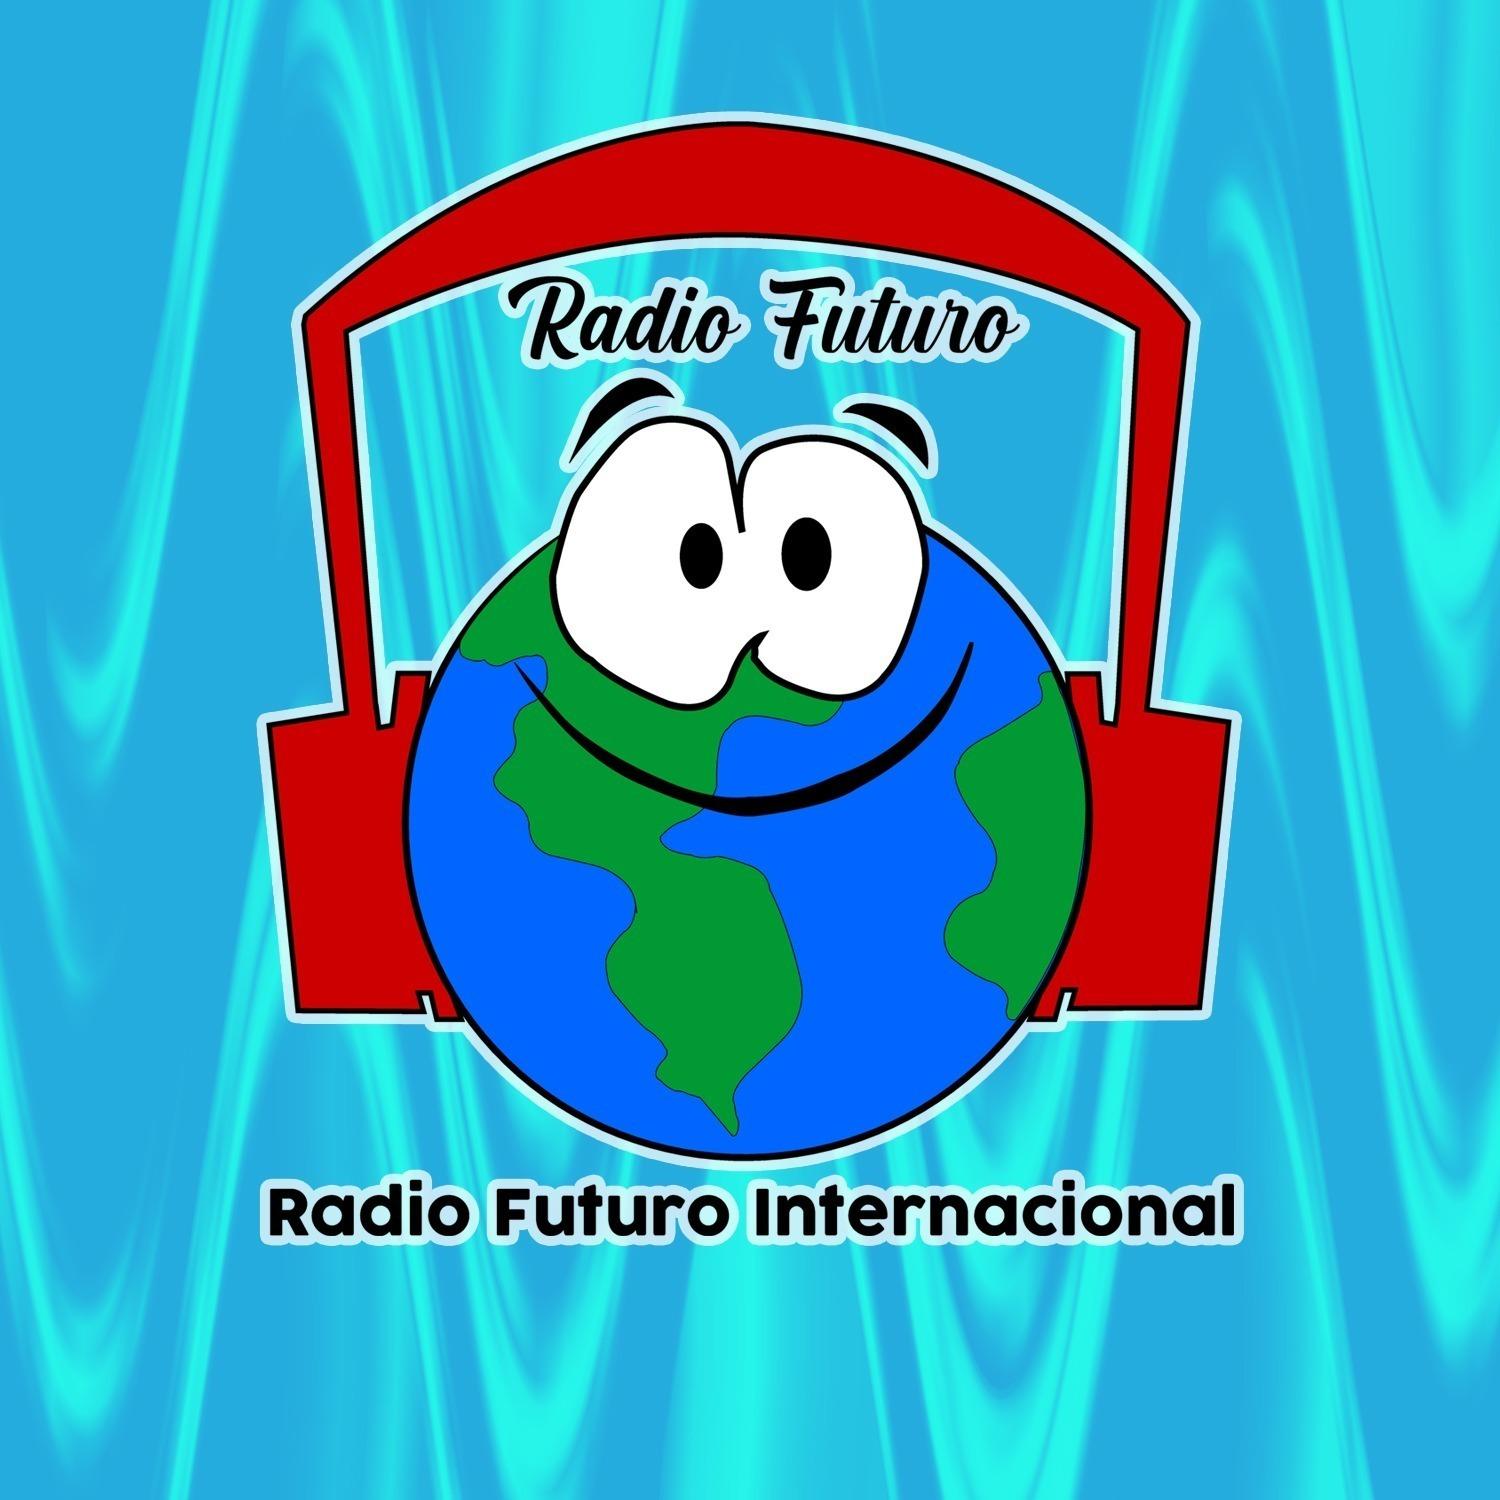 La Entrevista de Radio Futuro Internacional